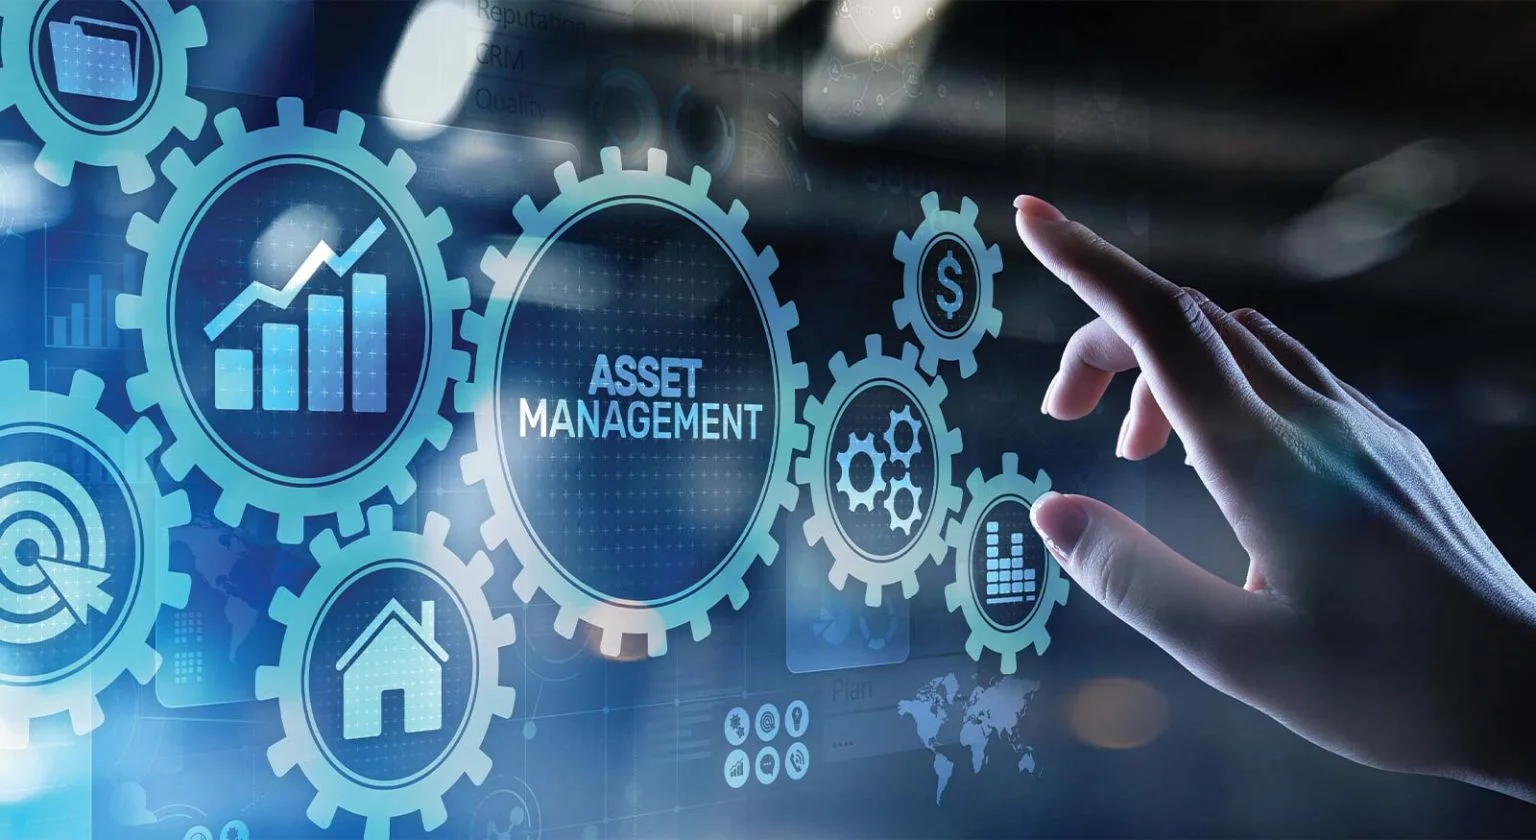 ASSET MANAGEMENT: Pentingnya Asset Management dalam Meningkatkan Efisiensi dan Produktivitas Bisnis